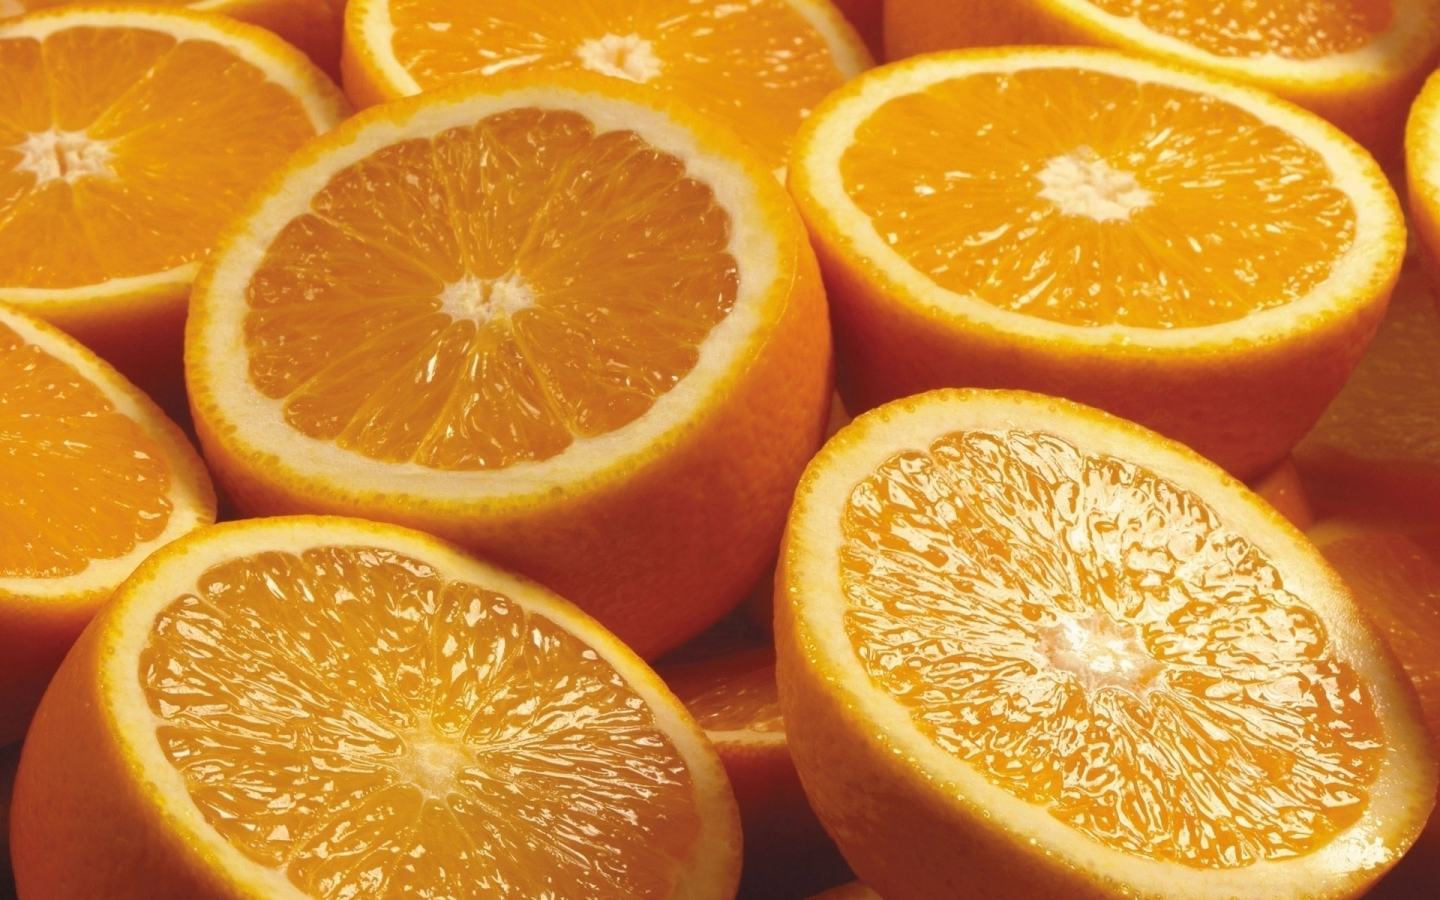 апельсины, цитрусовые